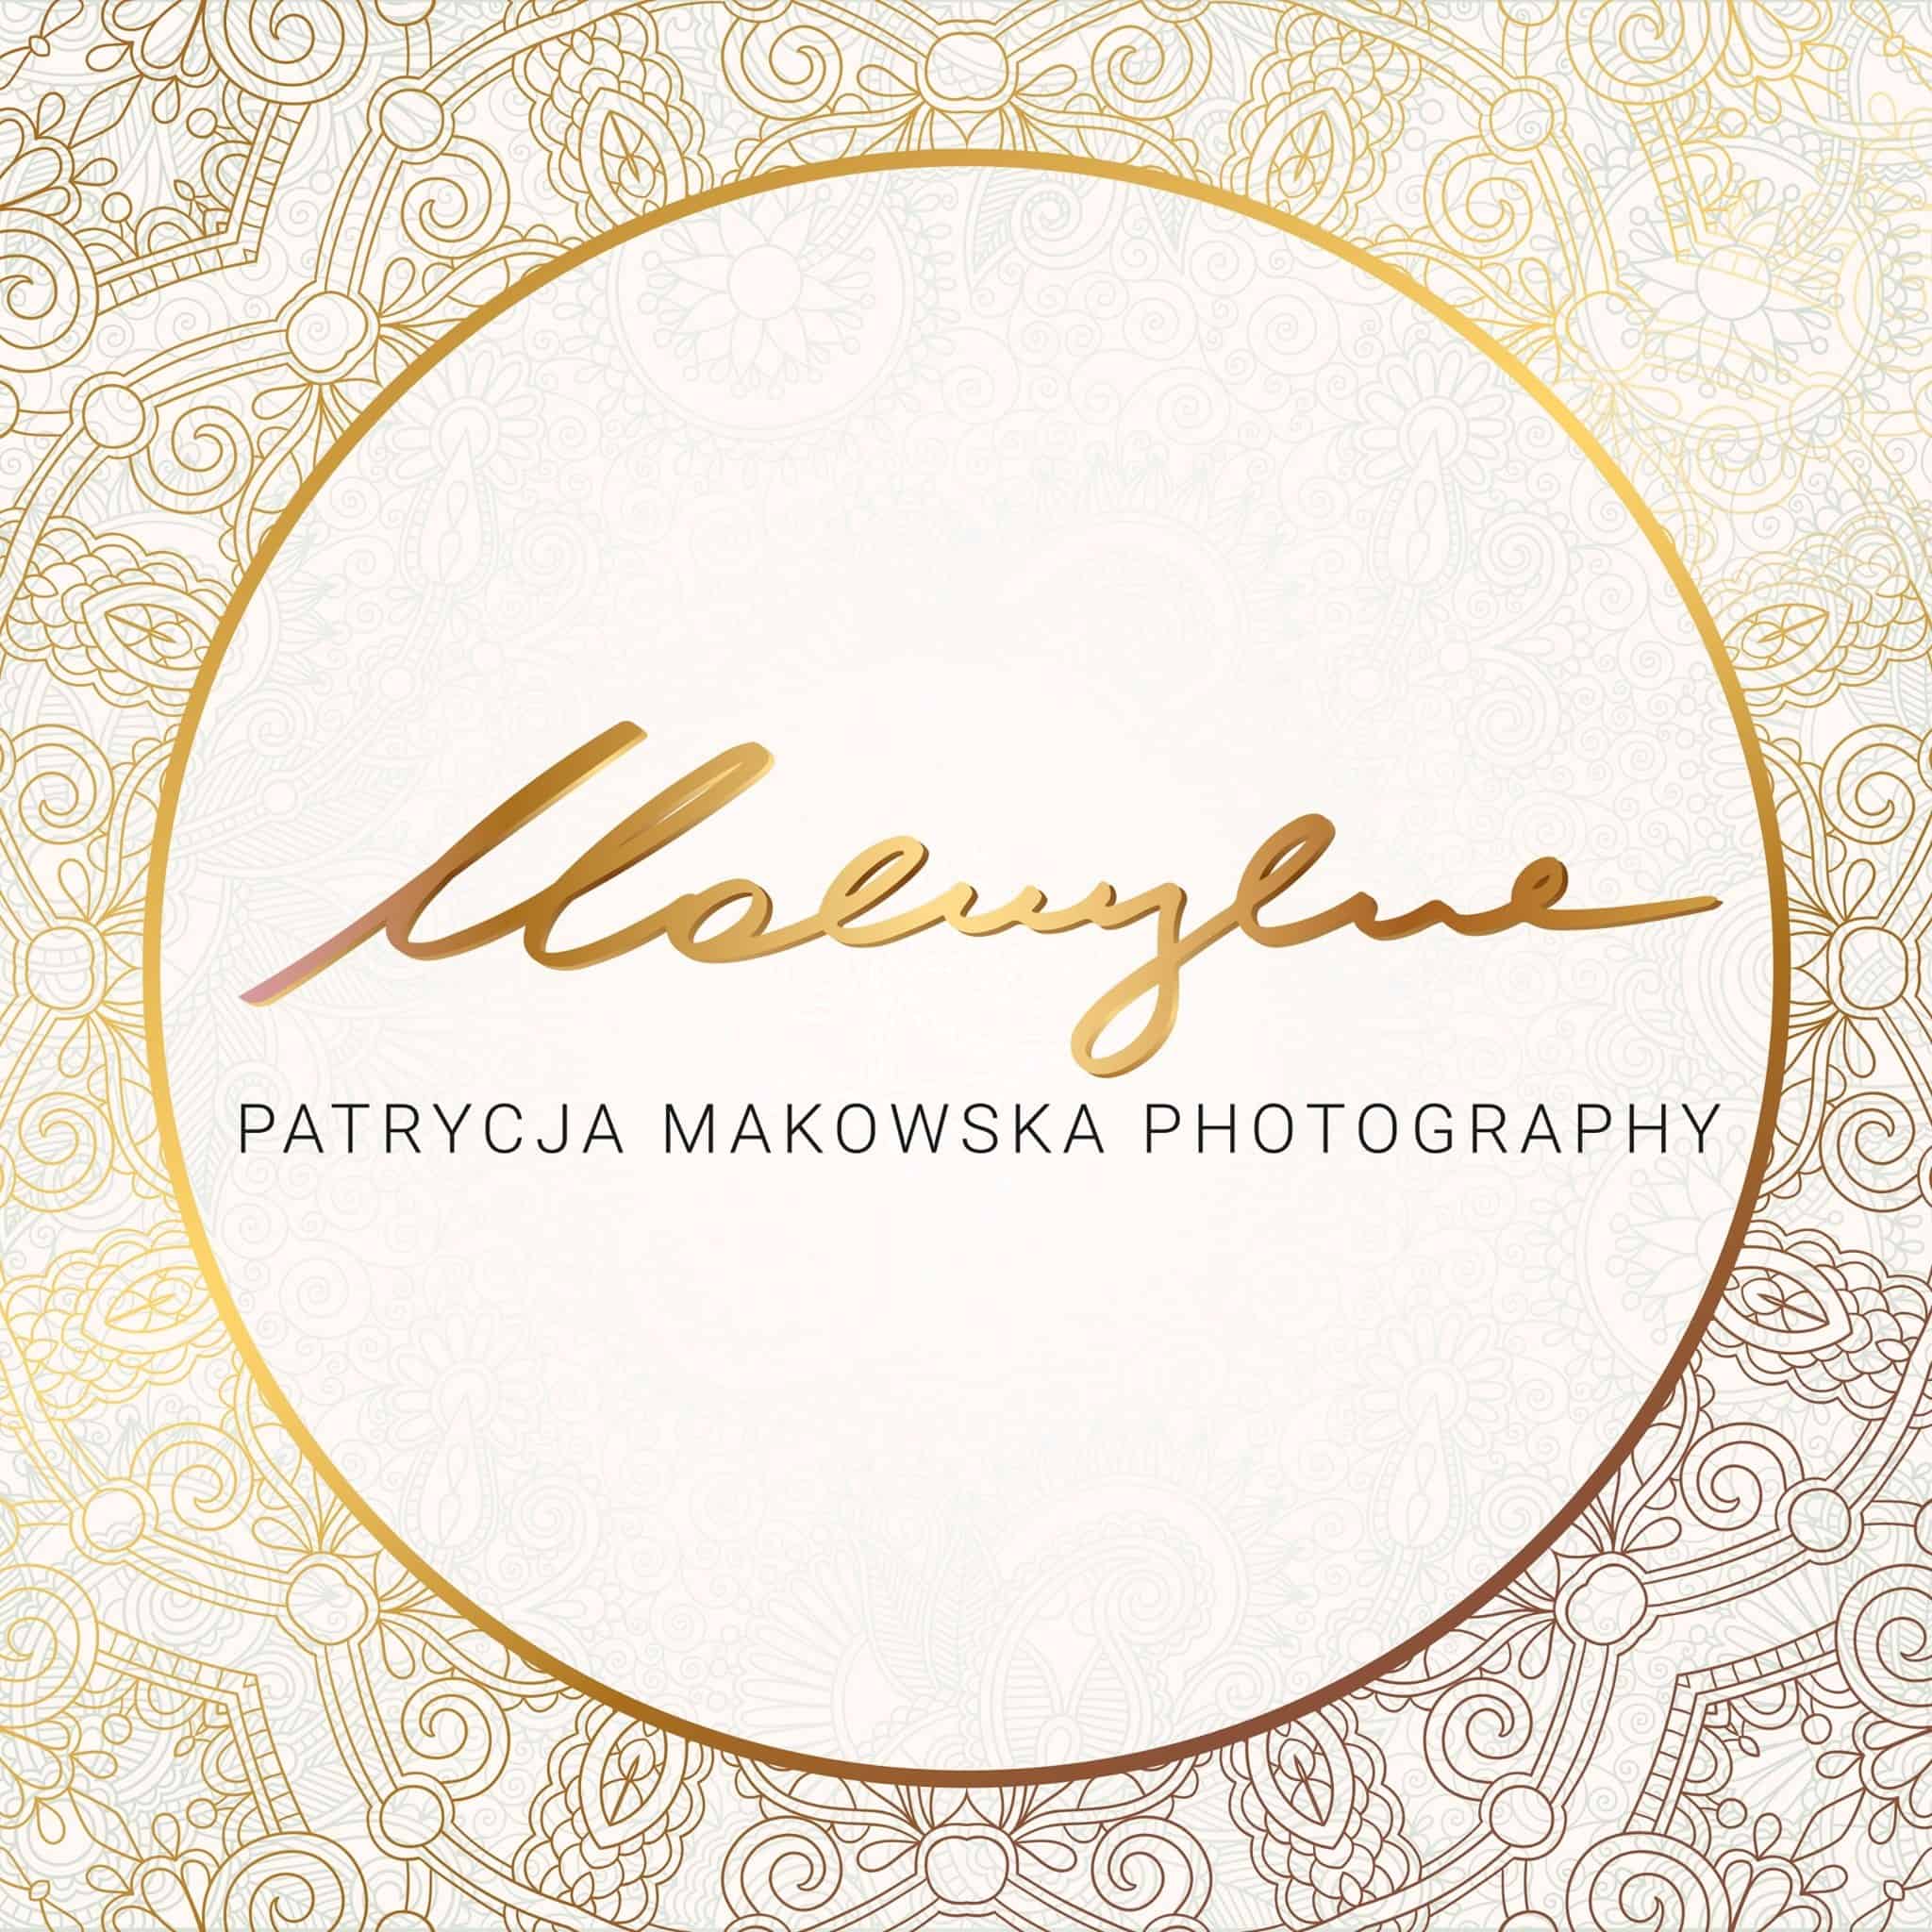 Patrycja Makowska Photography